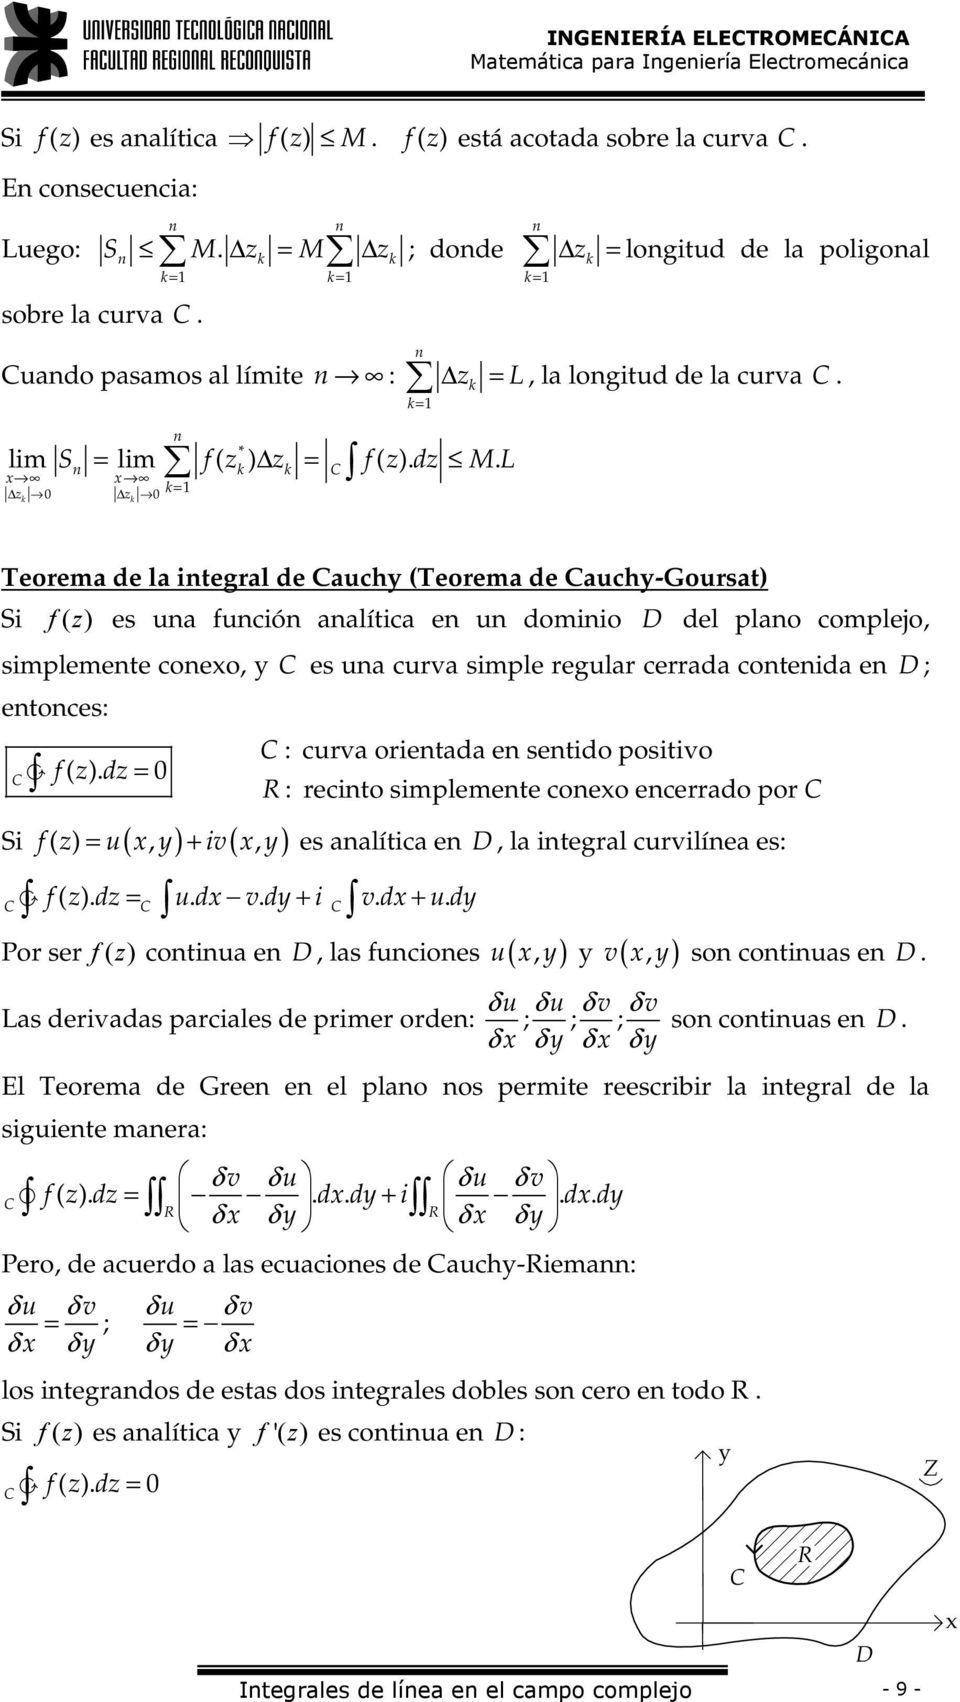 Teorema de la tegral de auch (Teorema de auch-goursat) S f ( ) es ua fucó aalítca e u domo D del plao complejo, smplemete coeo, es ua curva smple regular cerrada coteda e D ; etoces: f ( ).